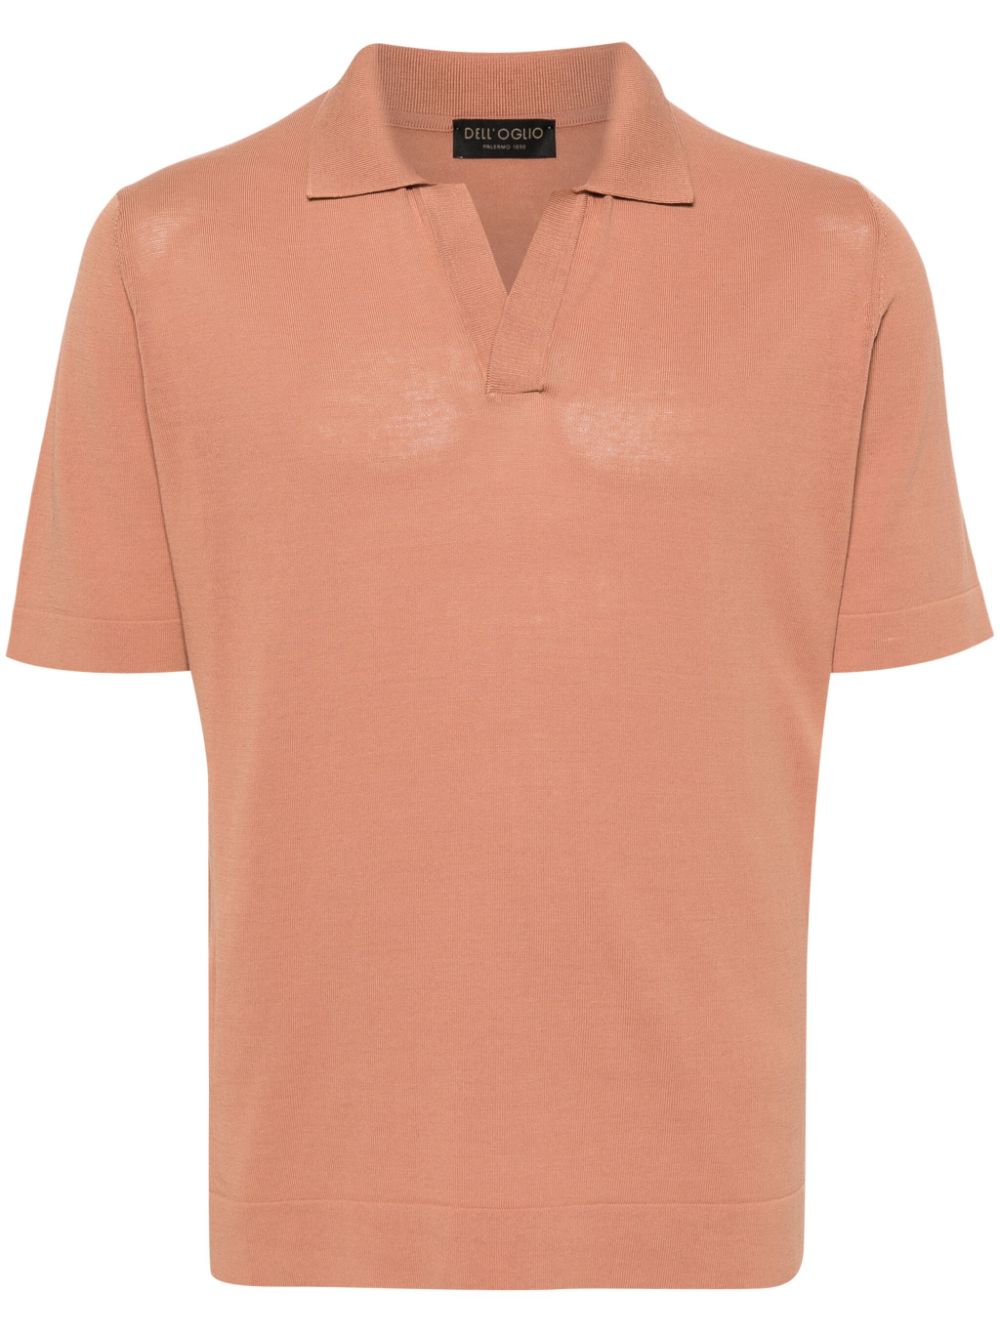 Dell'oglio fine-knit cotton polo shirt - Neutrals